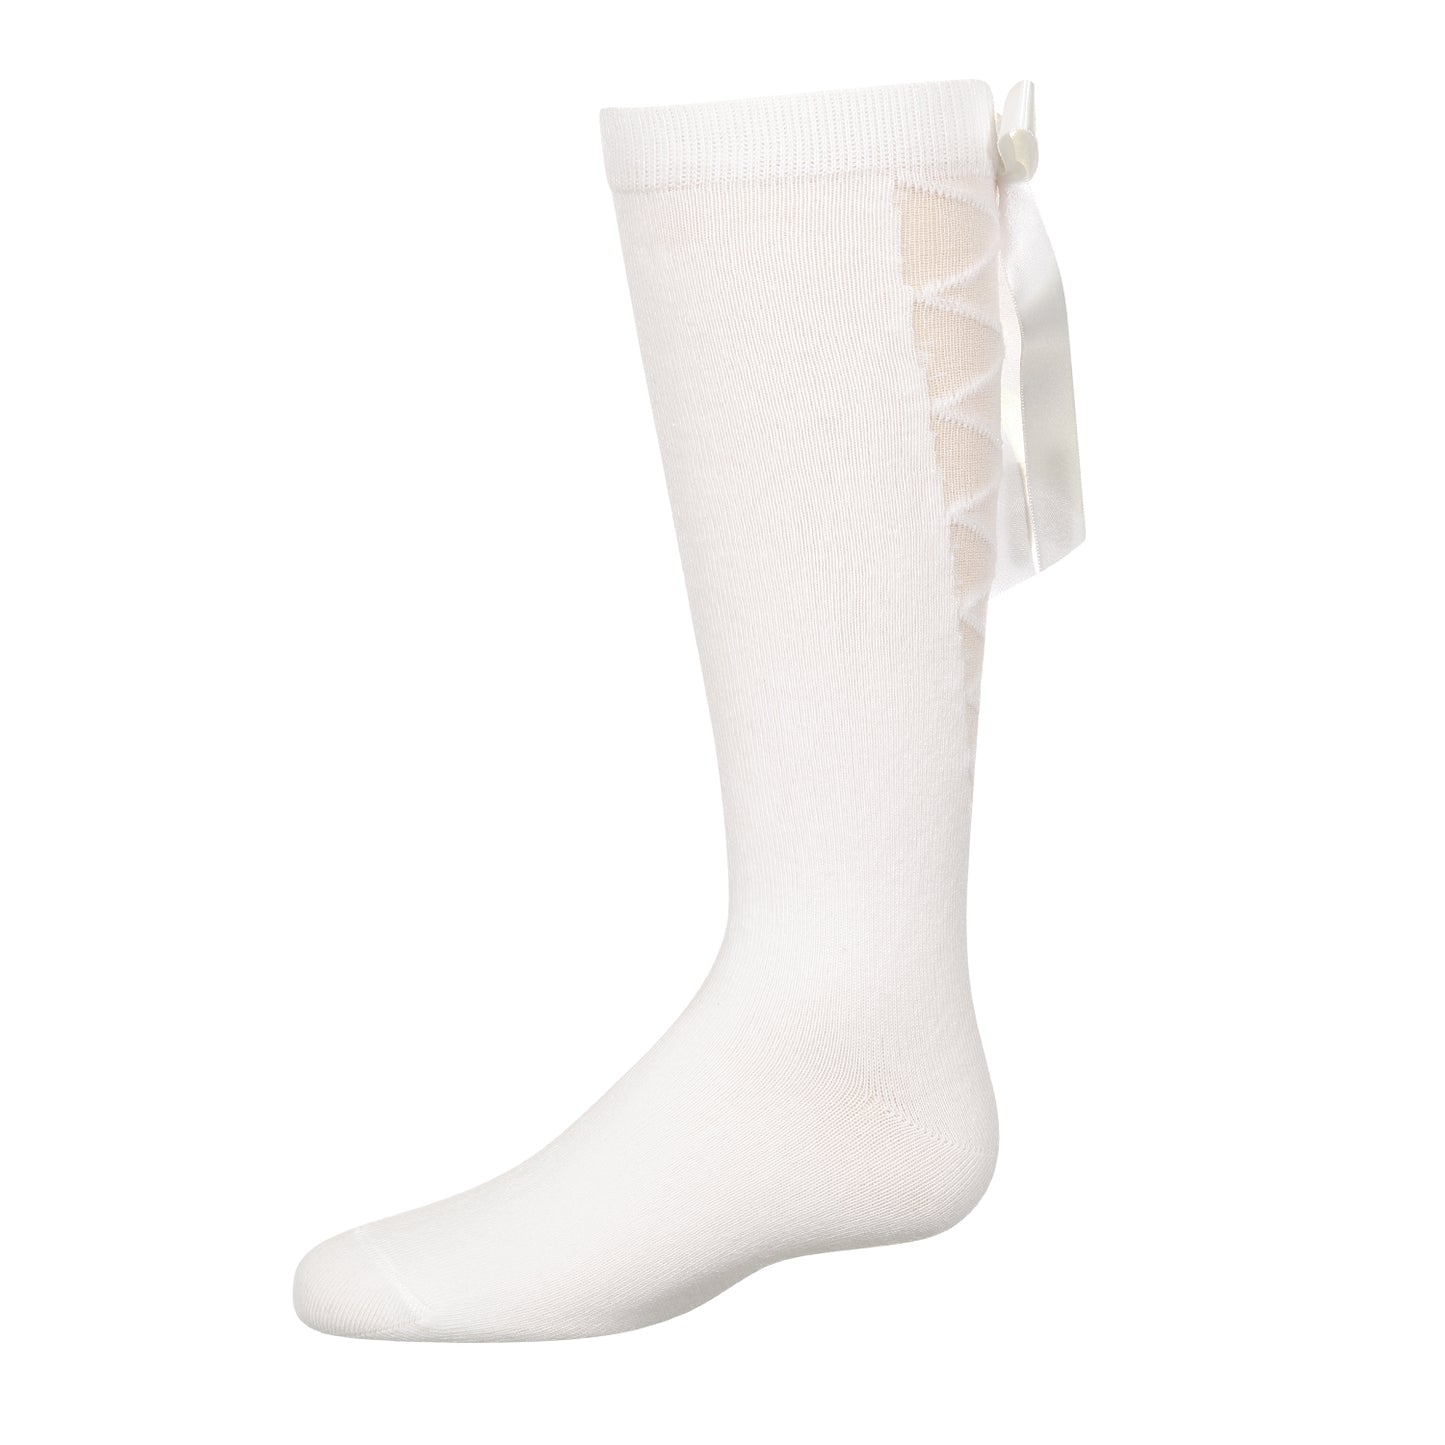 jrp socks girls white lace up knee high sock